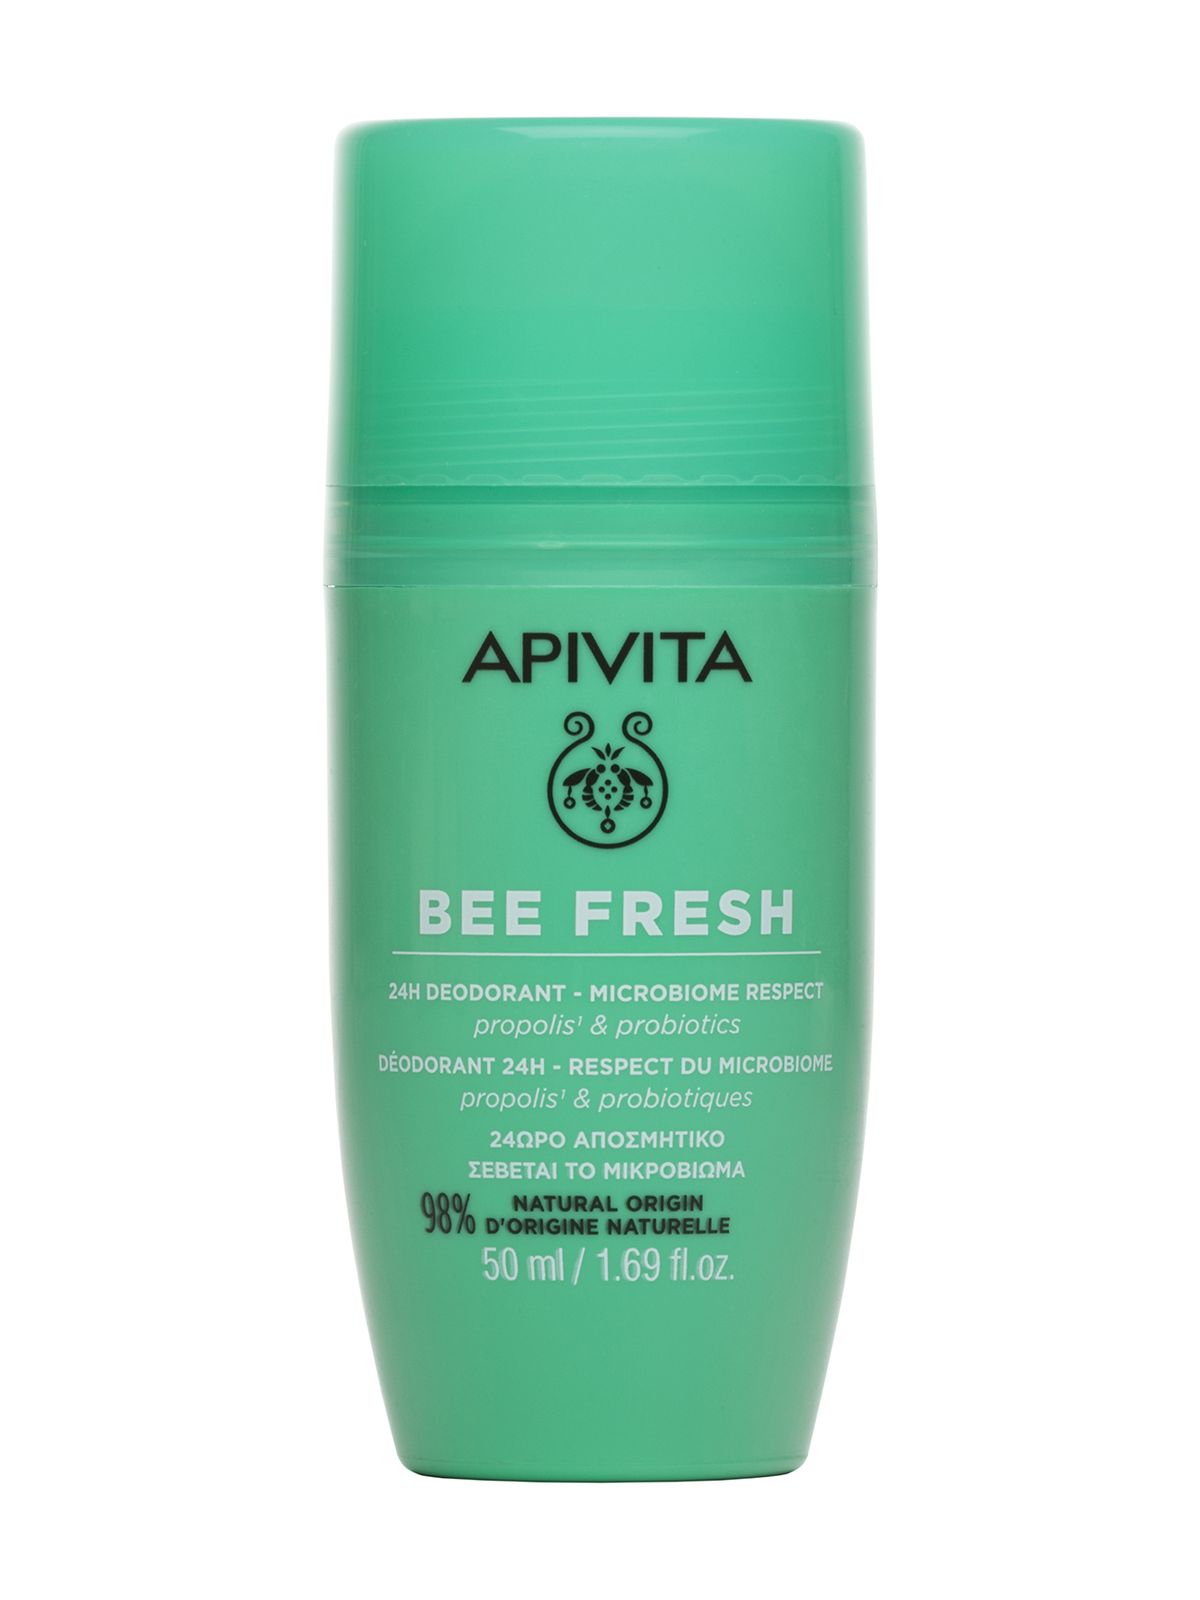 Дезодорант Apivita Bee Fresh 24H Deodorant Microbiome Respect Propolis & Probiotics masil шампунь для глубокого очищения кожи головы probiotics scalp scaling shampoo 150 мл